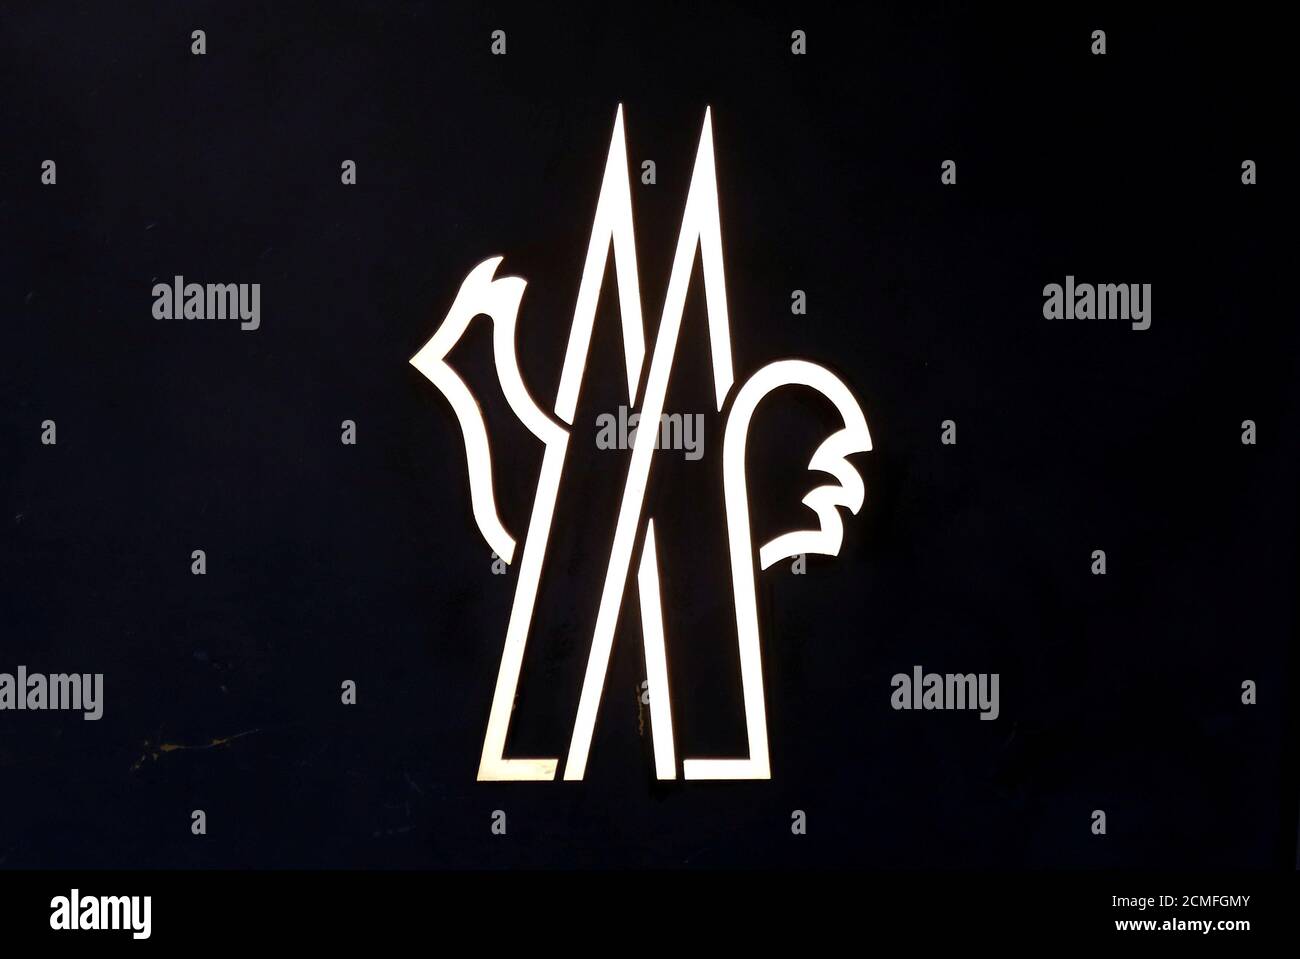 Moncler logo -Fotos und -Bildmaterial in hoher Auflösung – Alamy